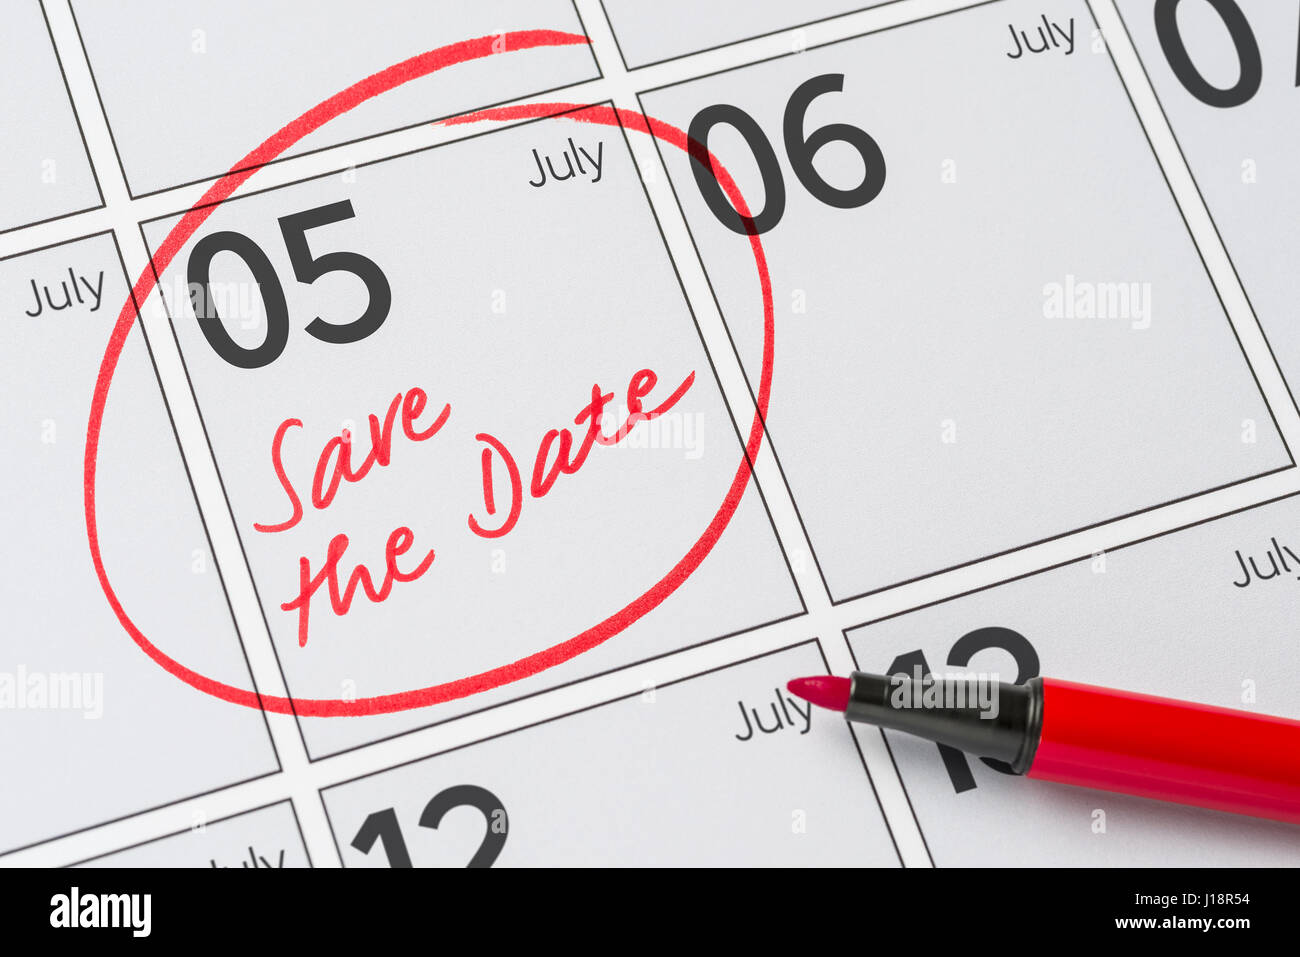 Enregistrer la date inscrite sur un calendrier - Juillet 05 Banque D'Images